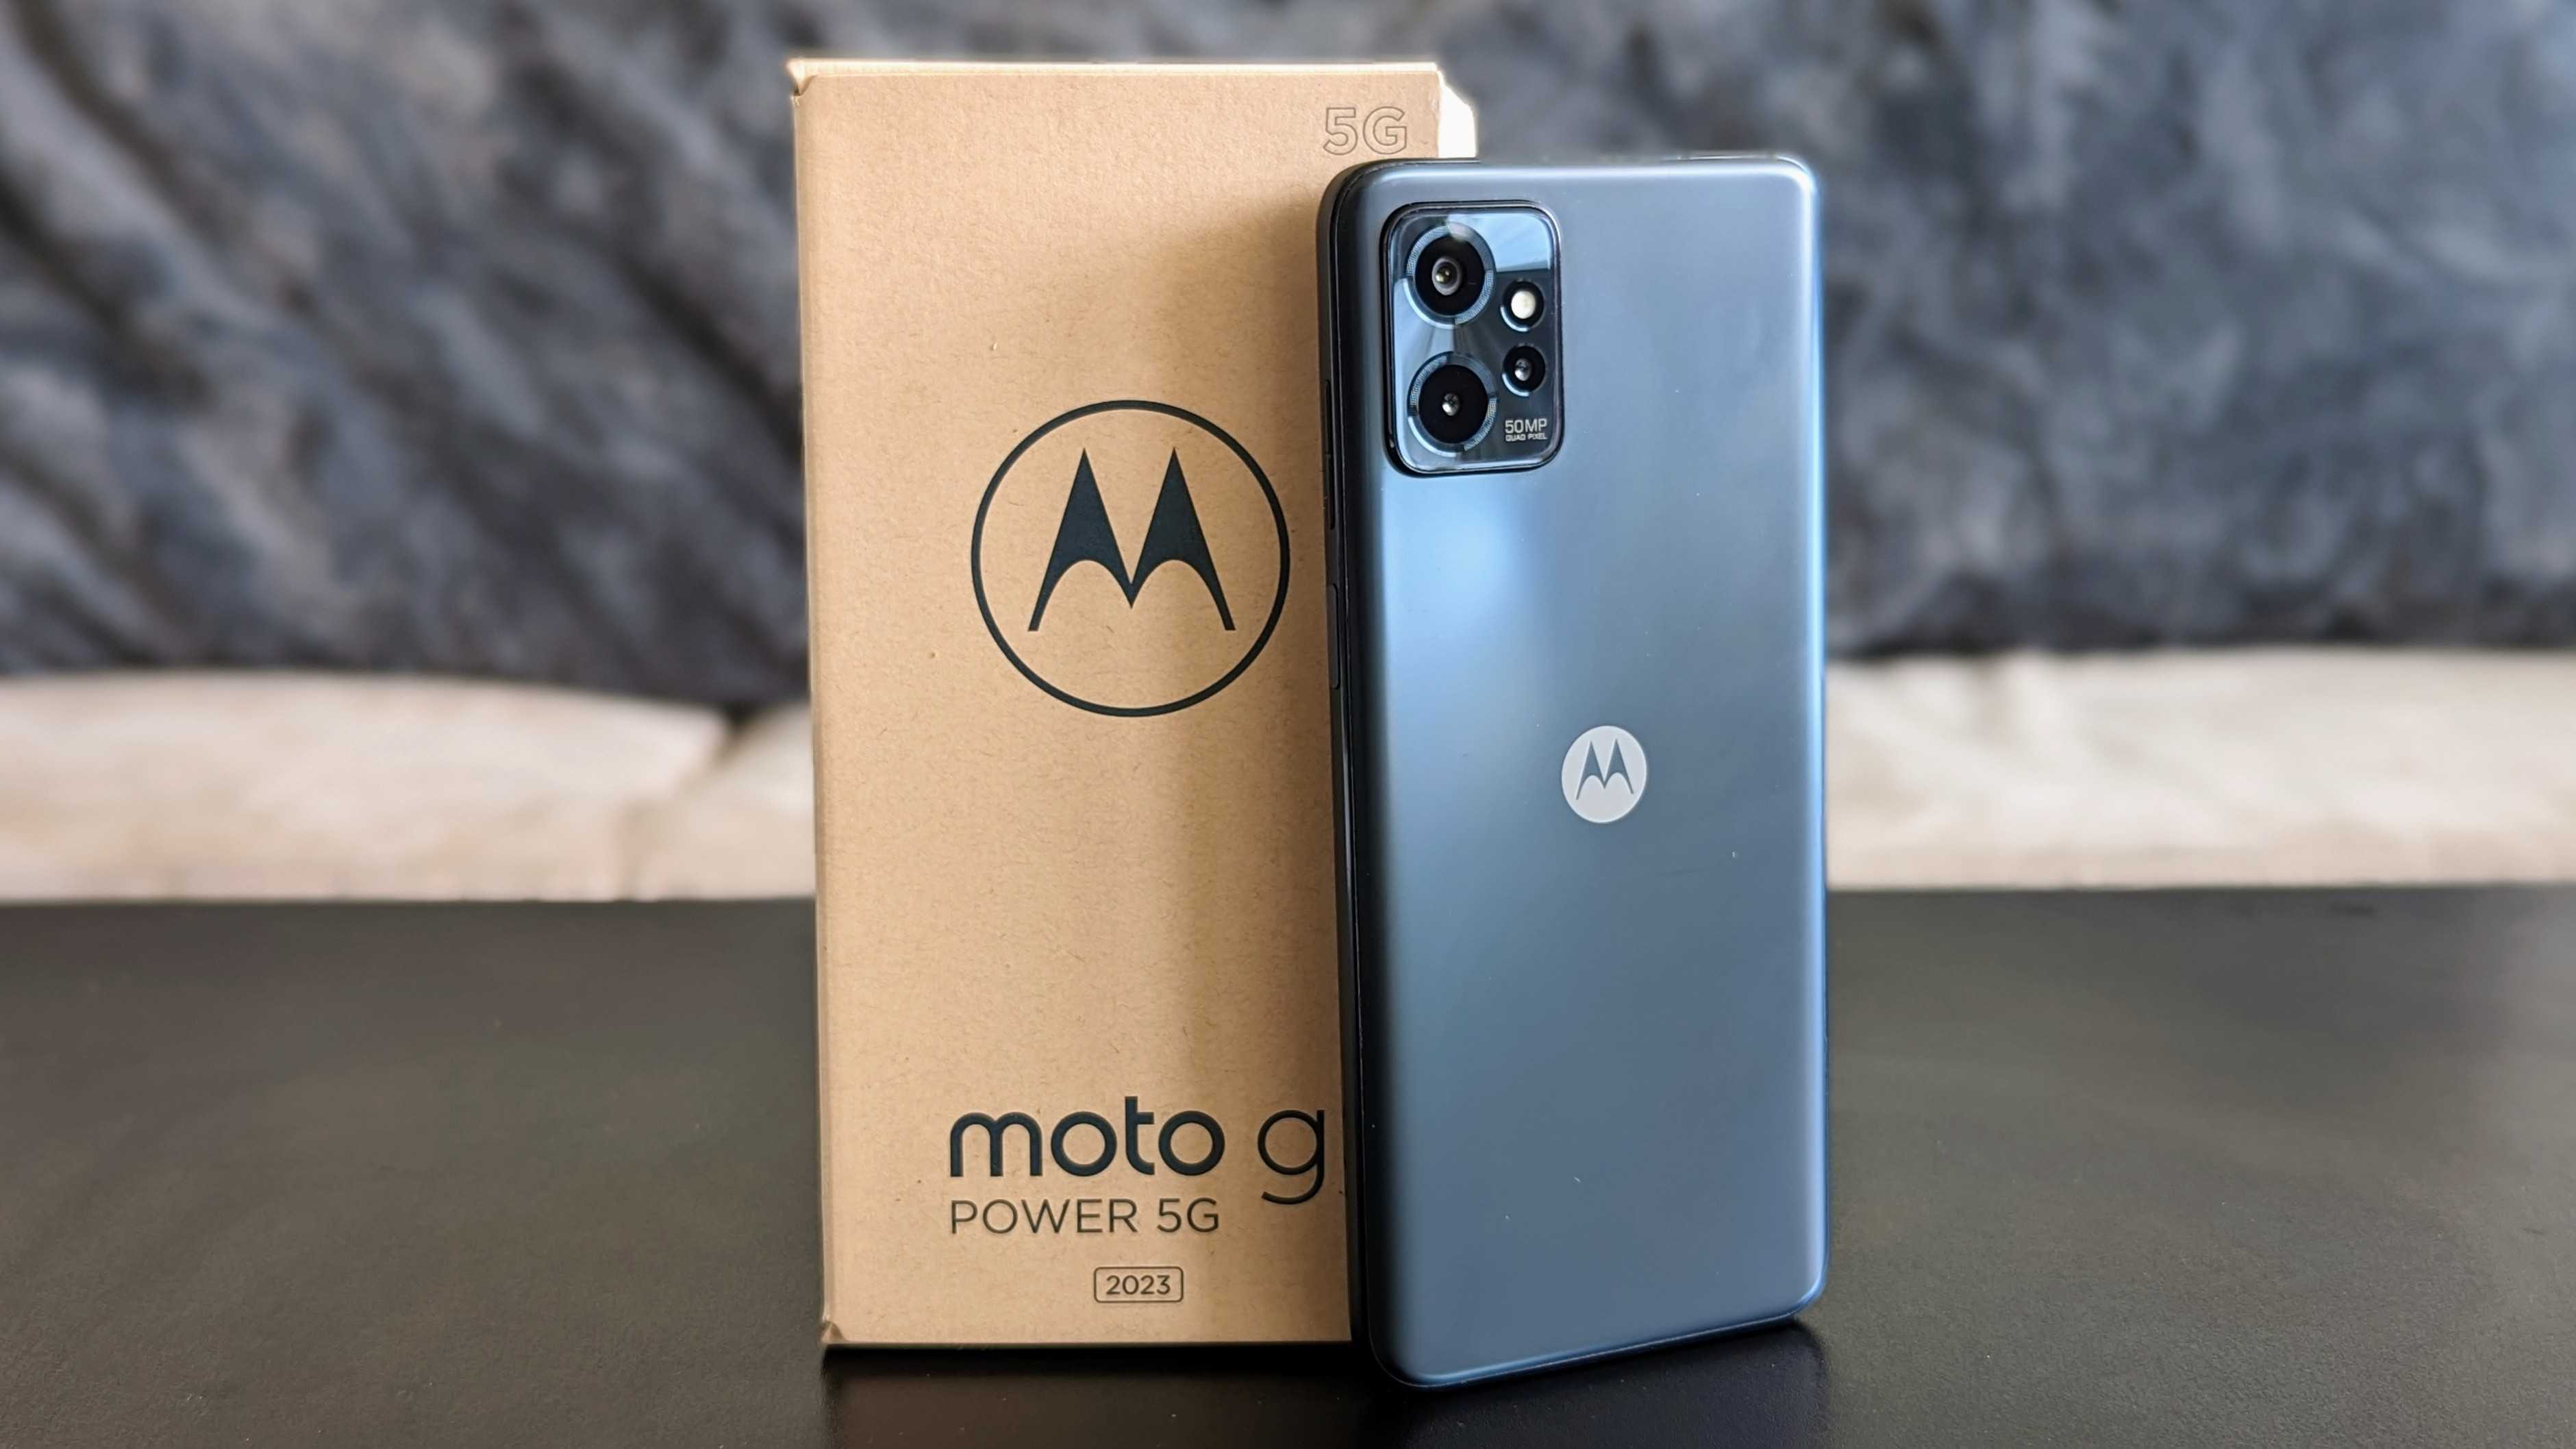 Moto G Power 5G retail box